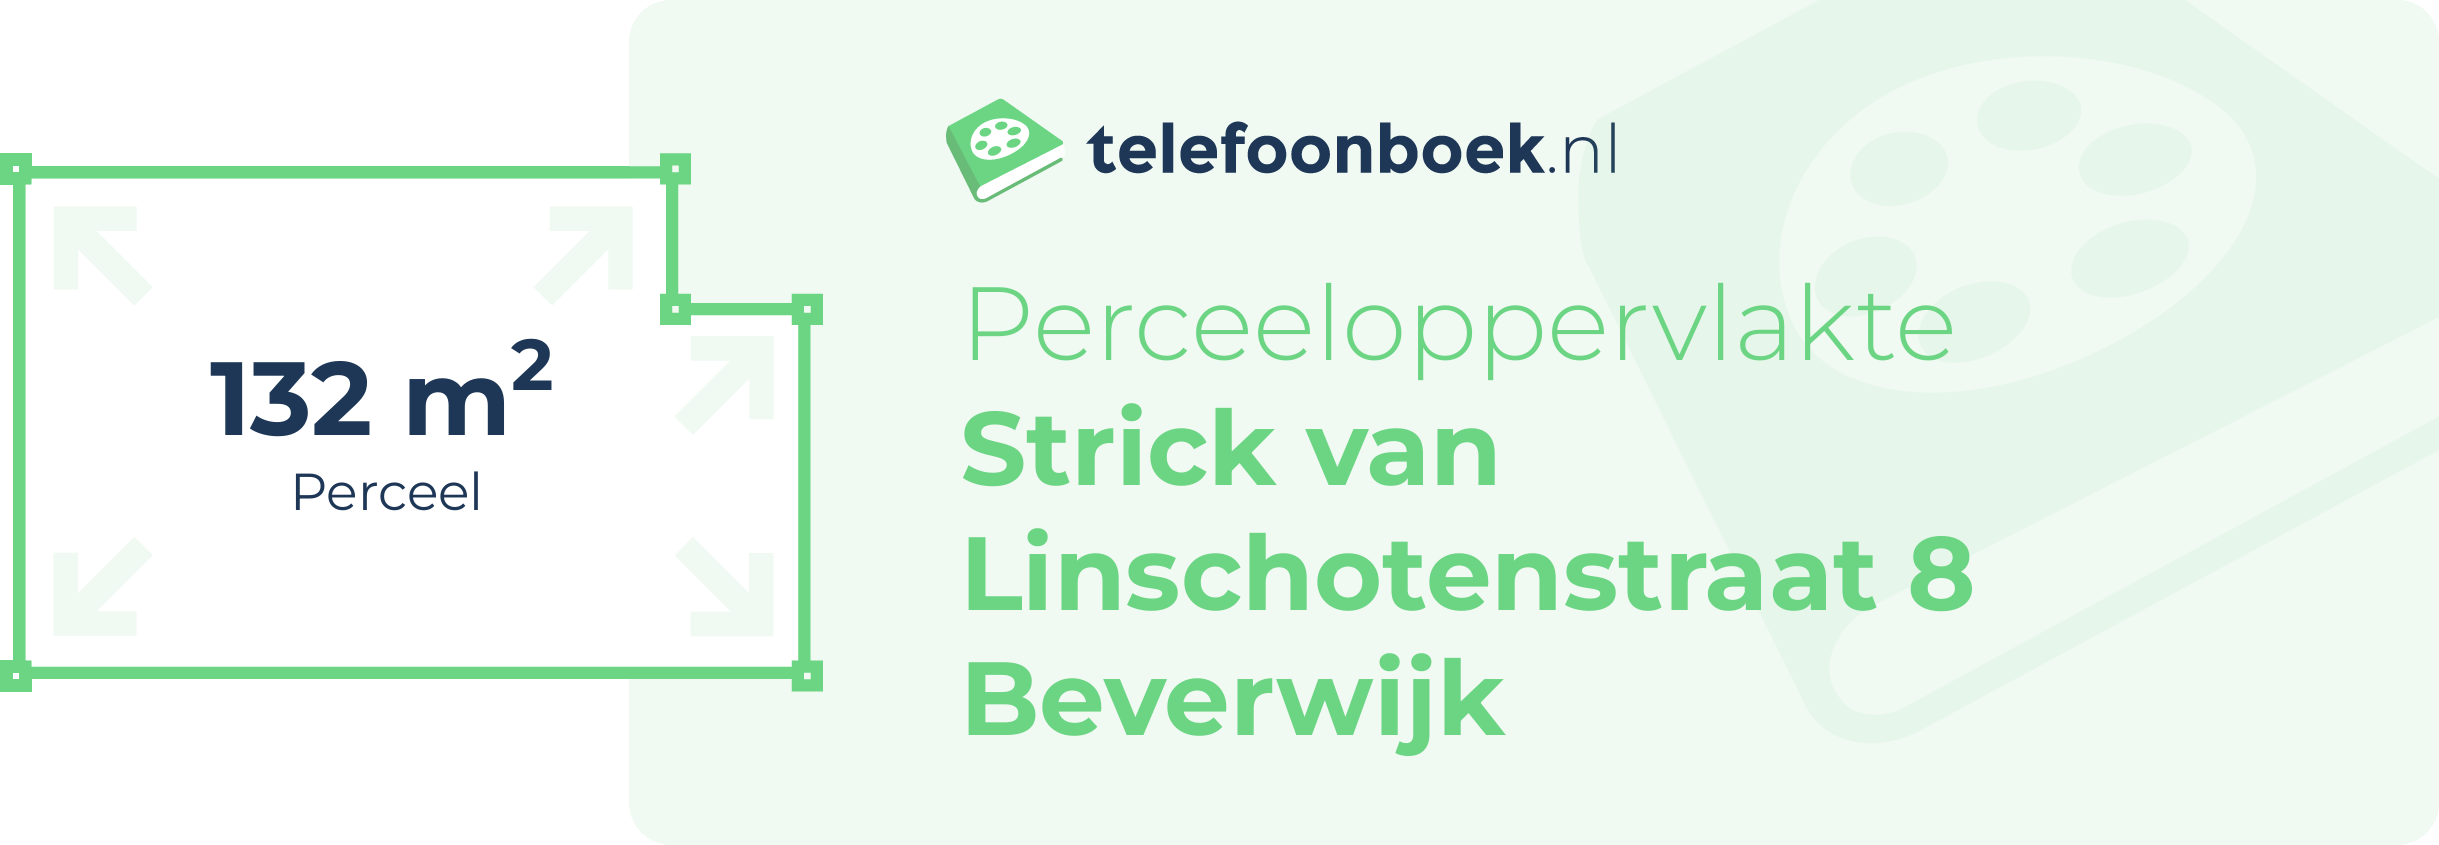 Perceeloppervlakte Strick Van Linschotenstraat 8 Beverwijk